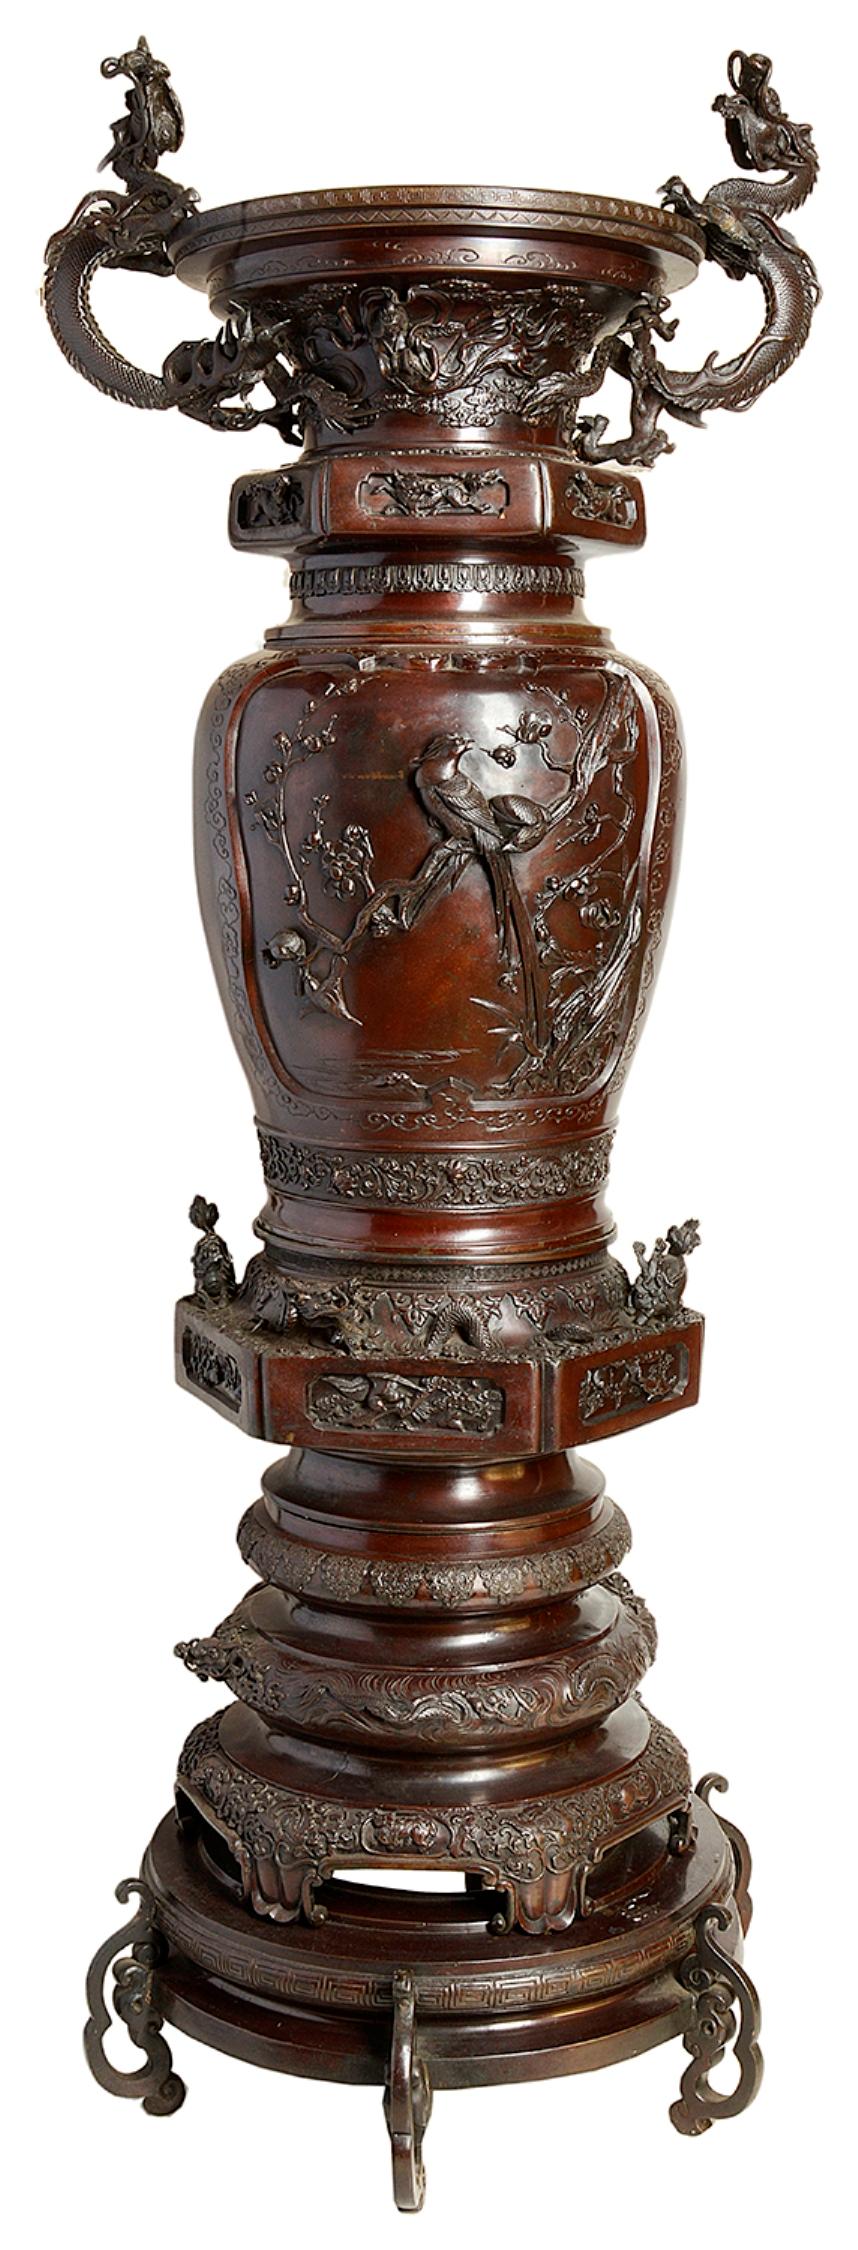 Une paire très impressionnante et de bonne qualité de vases à deux anses en bronze de la période Meiji (1868-1912). Chacune d'entre elles présente de merveilleuses scènes classiques de fleurs et d'oiseaux, entourées de dragons et de motifs mythiques.